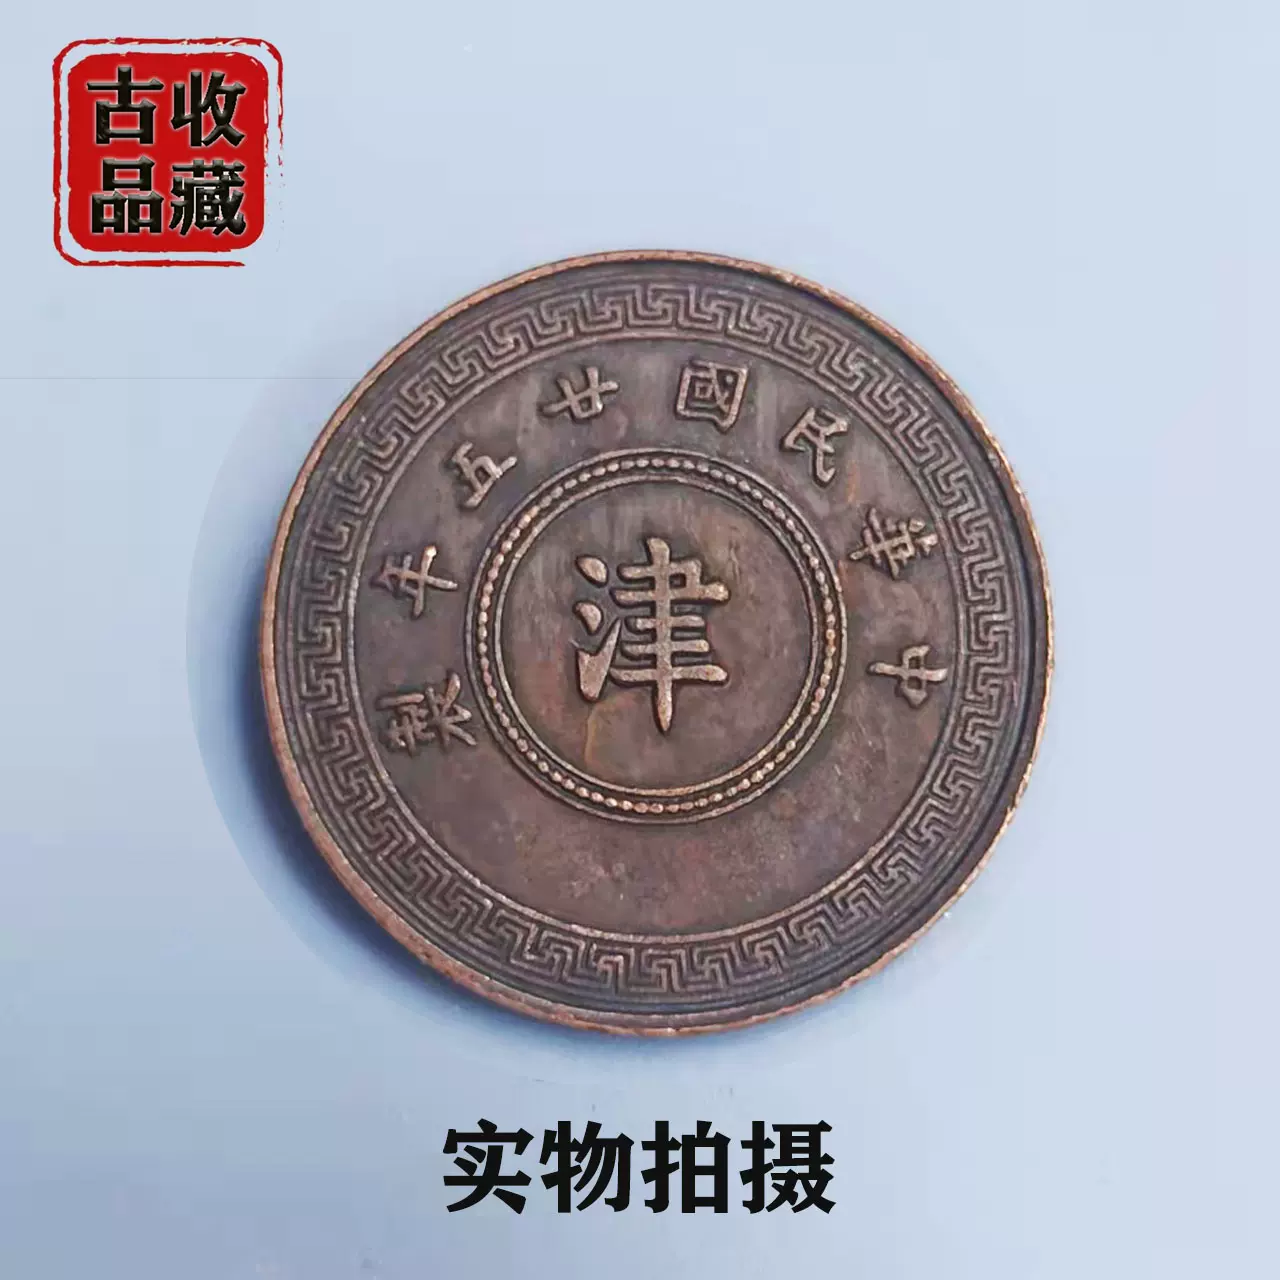 古玩钱币铜元铜币收藏中华民国二十五年制津字背嘉禾贰枚精美铜板-Taobao